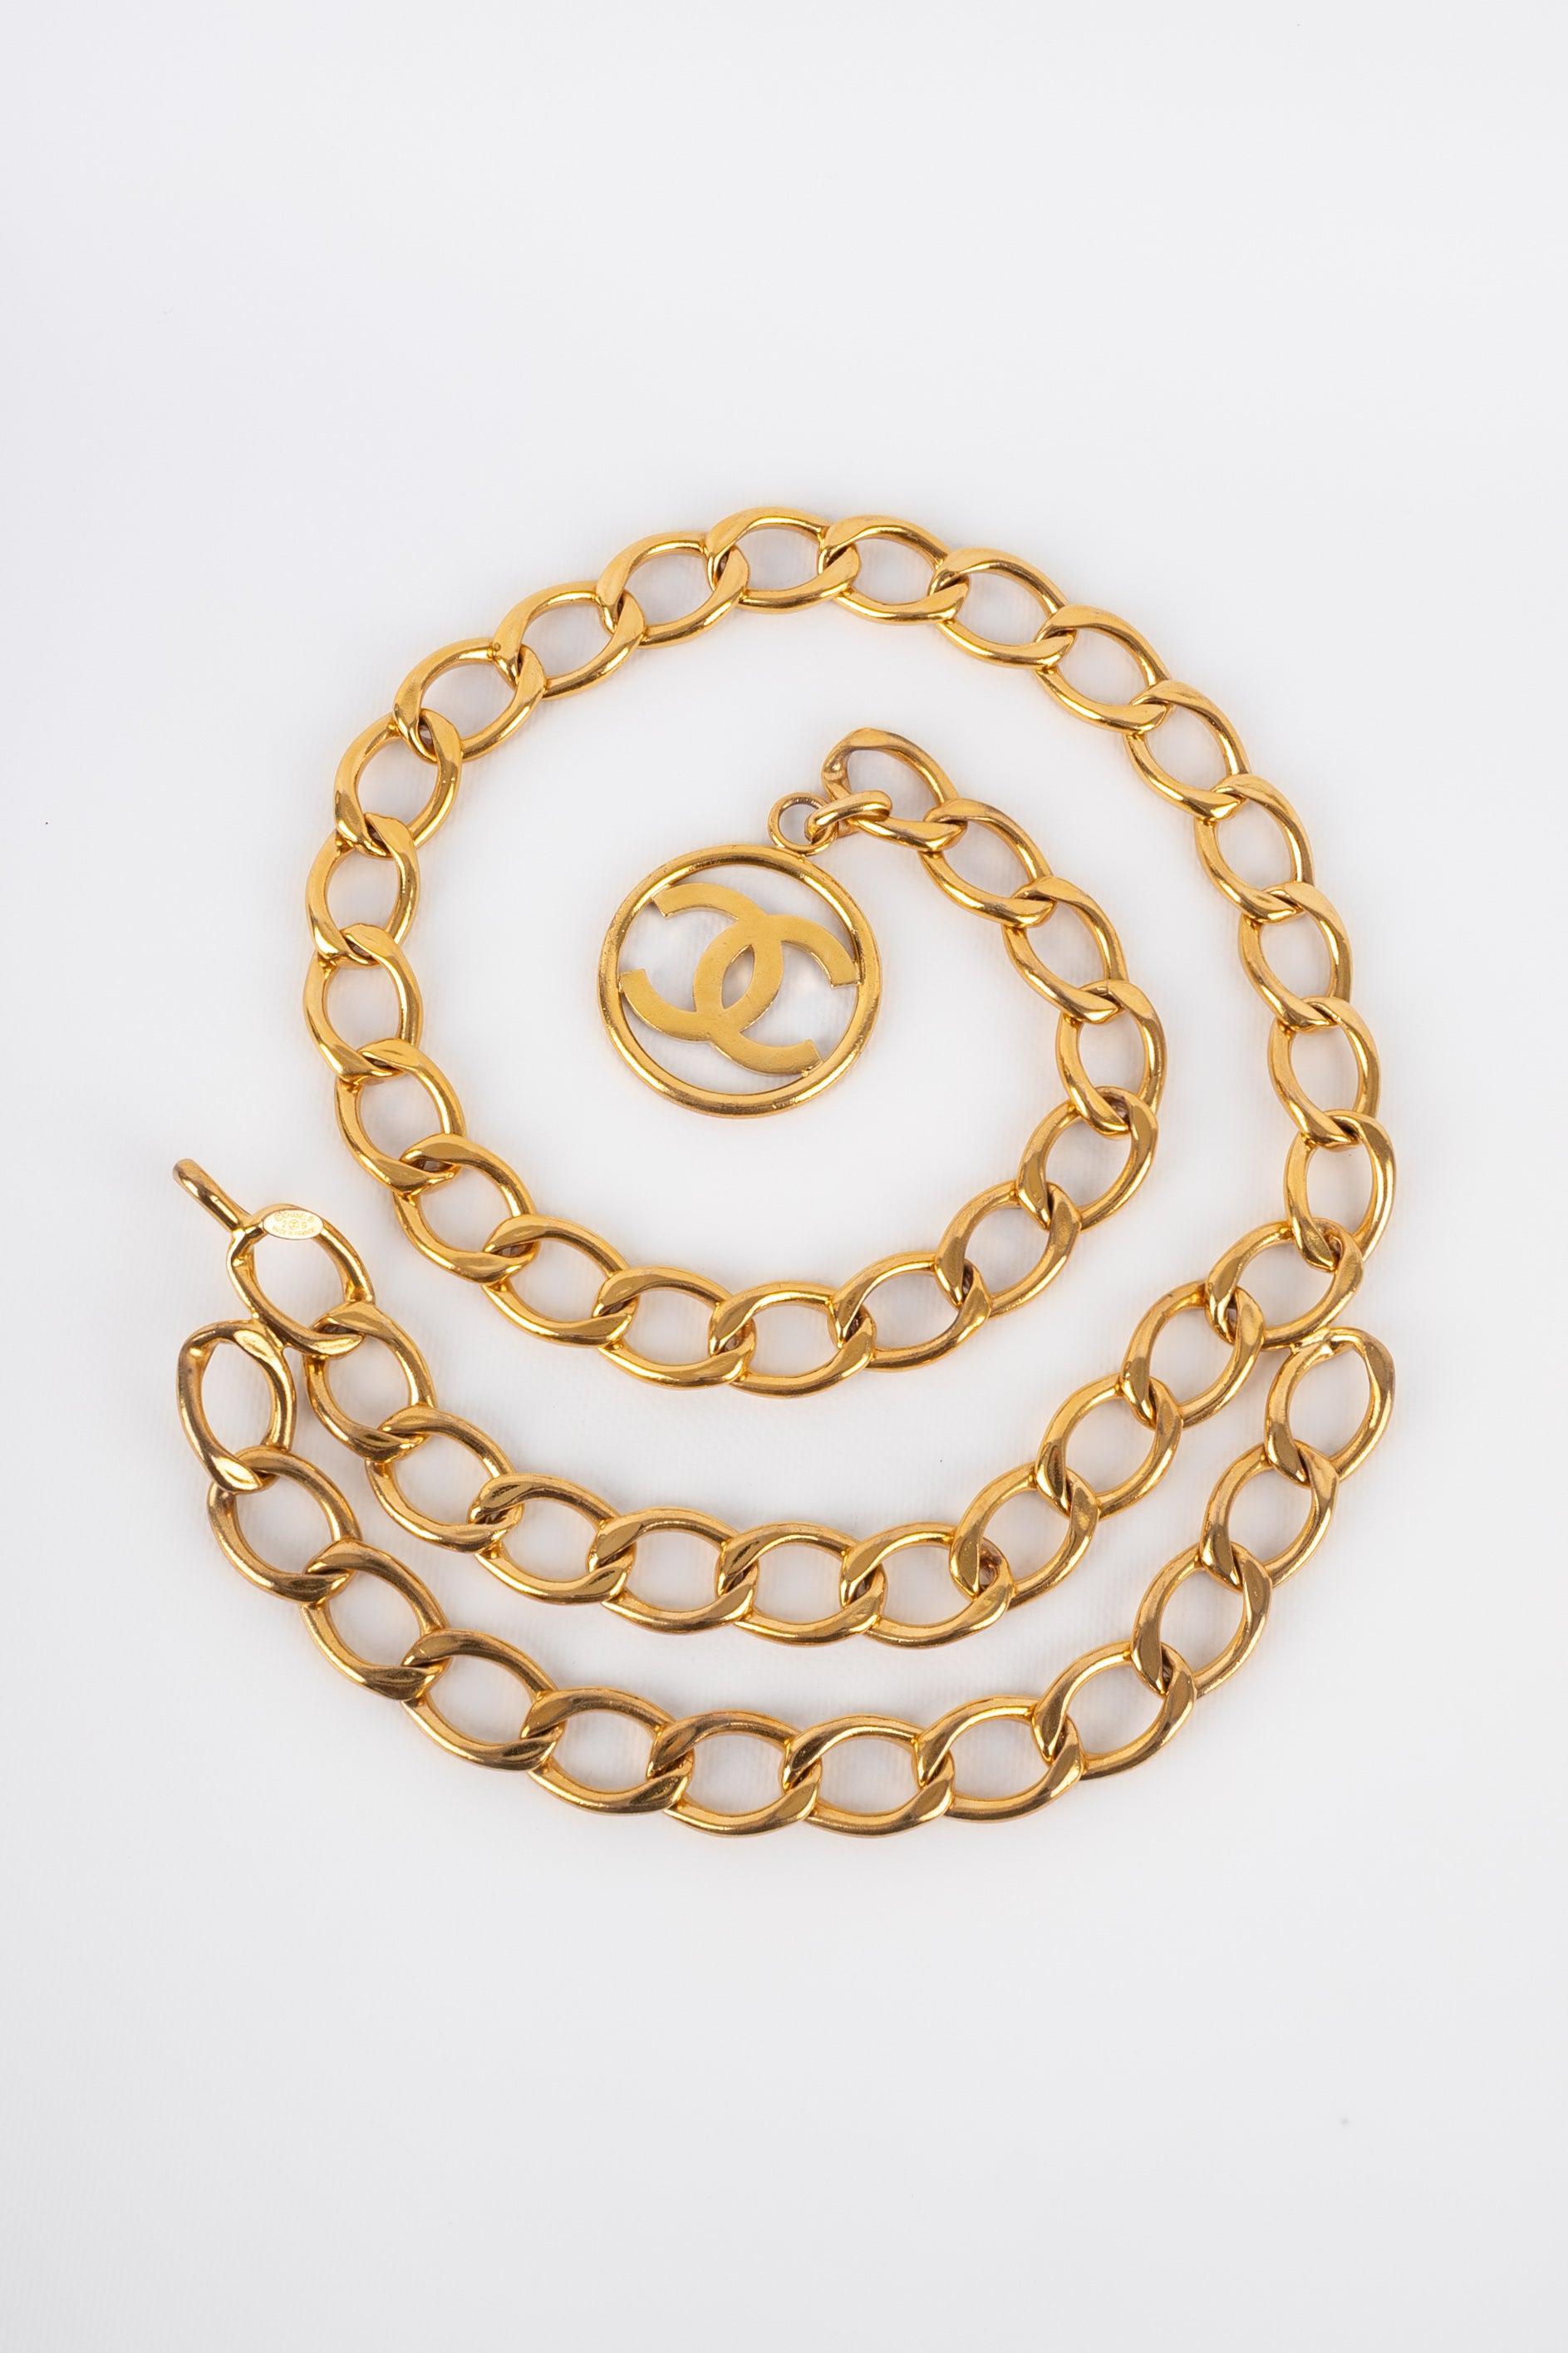 Chanel - (Made in France) Goldener Metallgürtel. 2cc9 Collection'S aus dem Anfang der 1990er Jahre.
 
 Zusätzliche Informationen: 
 Zustand: Sehr guter Zustand
 Abmessungen: Länge: 98 cm
 Zeitraum: 21. Jahrhundert
 
 Sellers Referenz: CCB44
